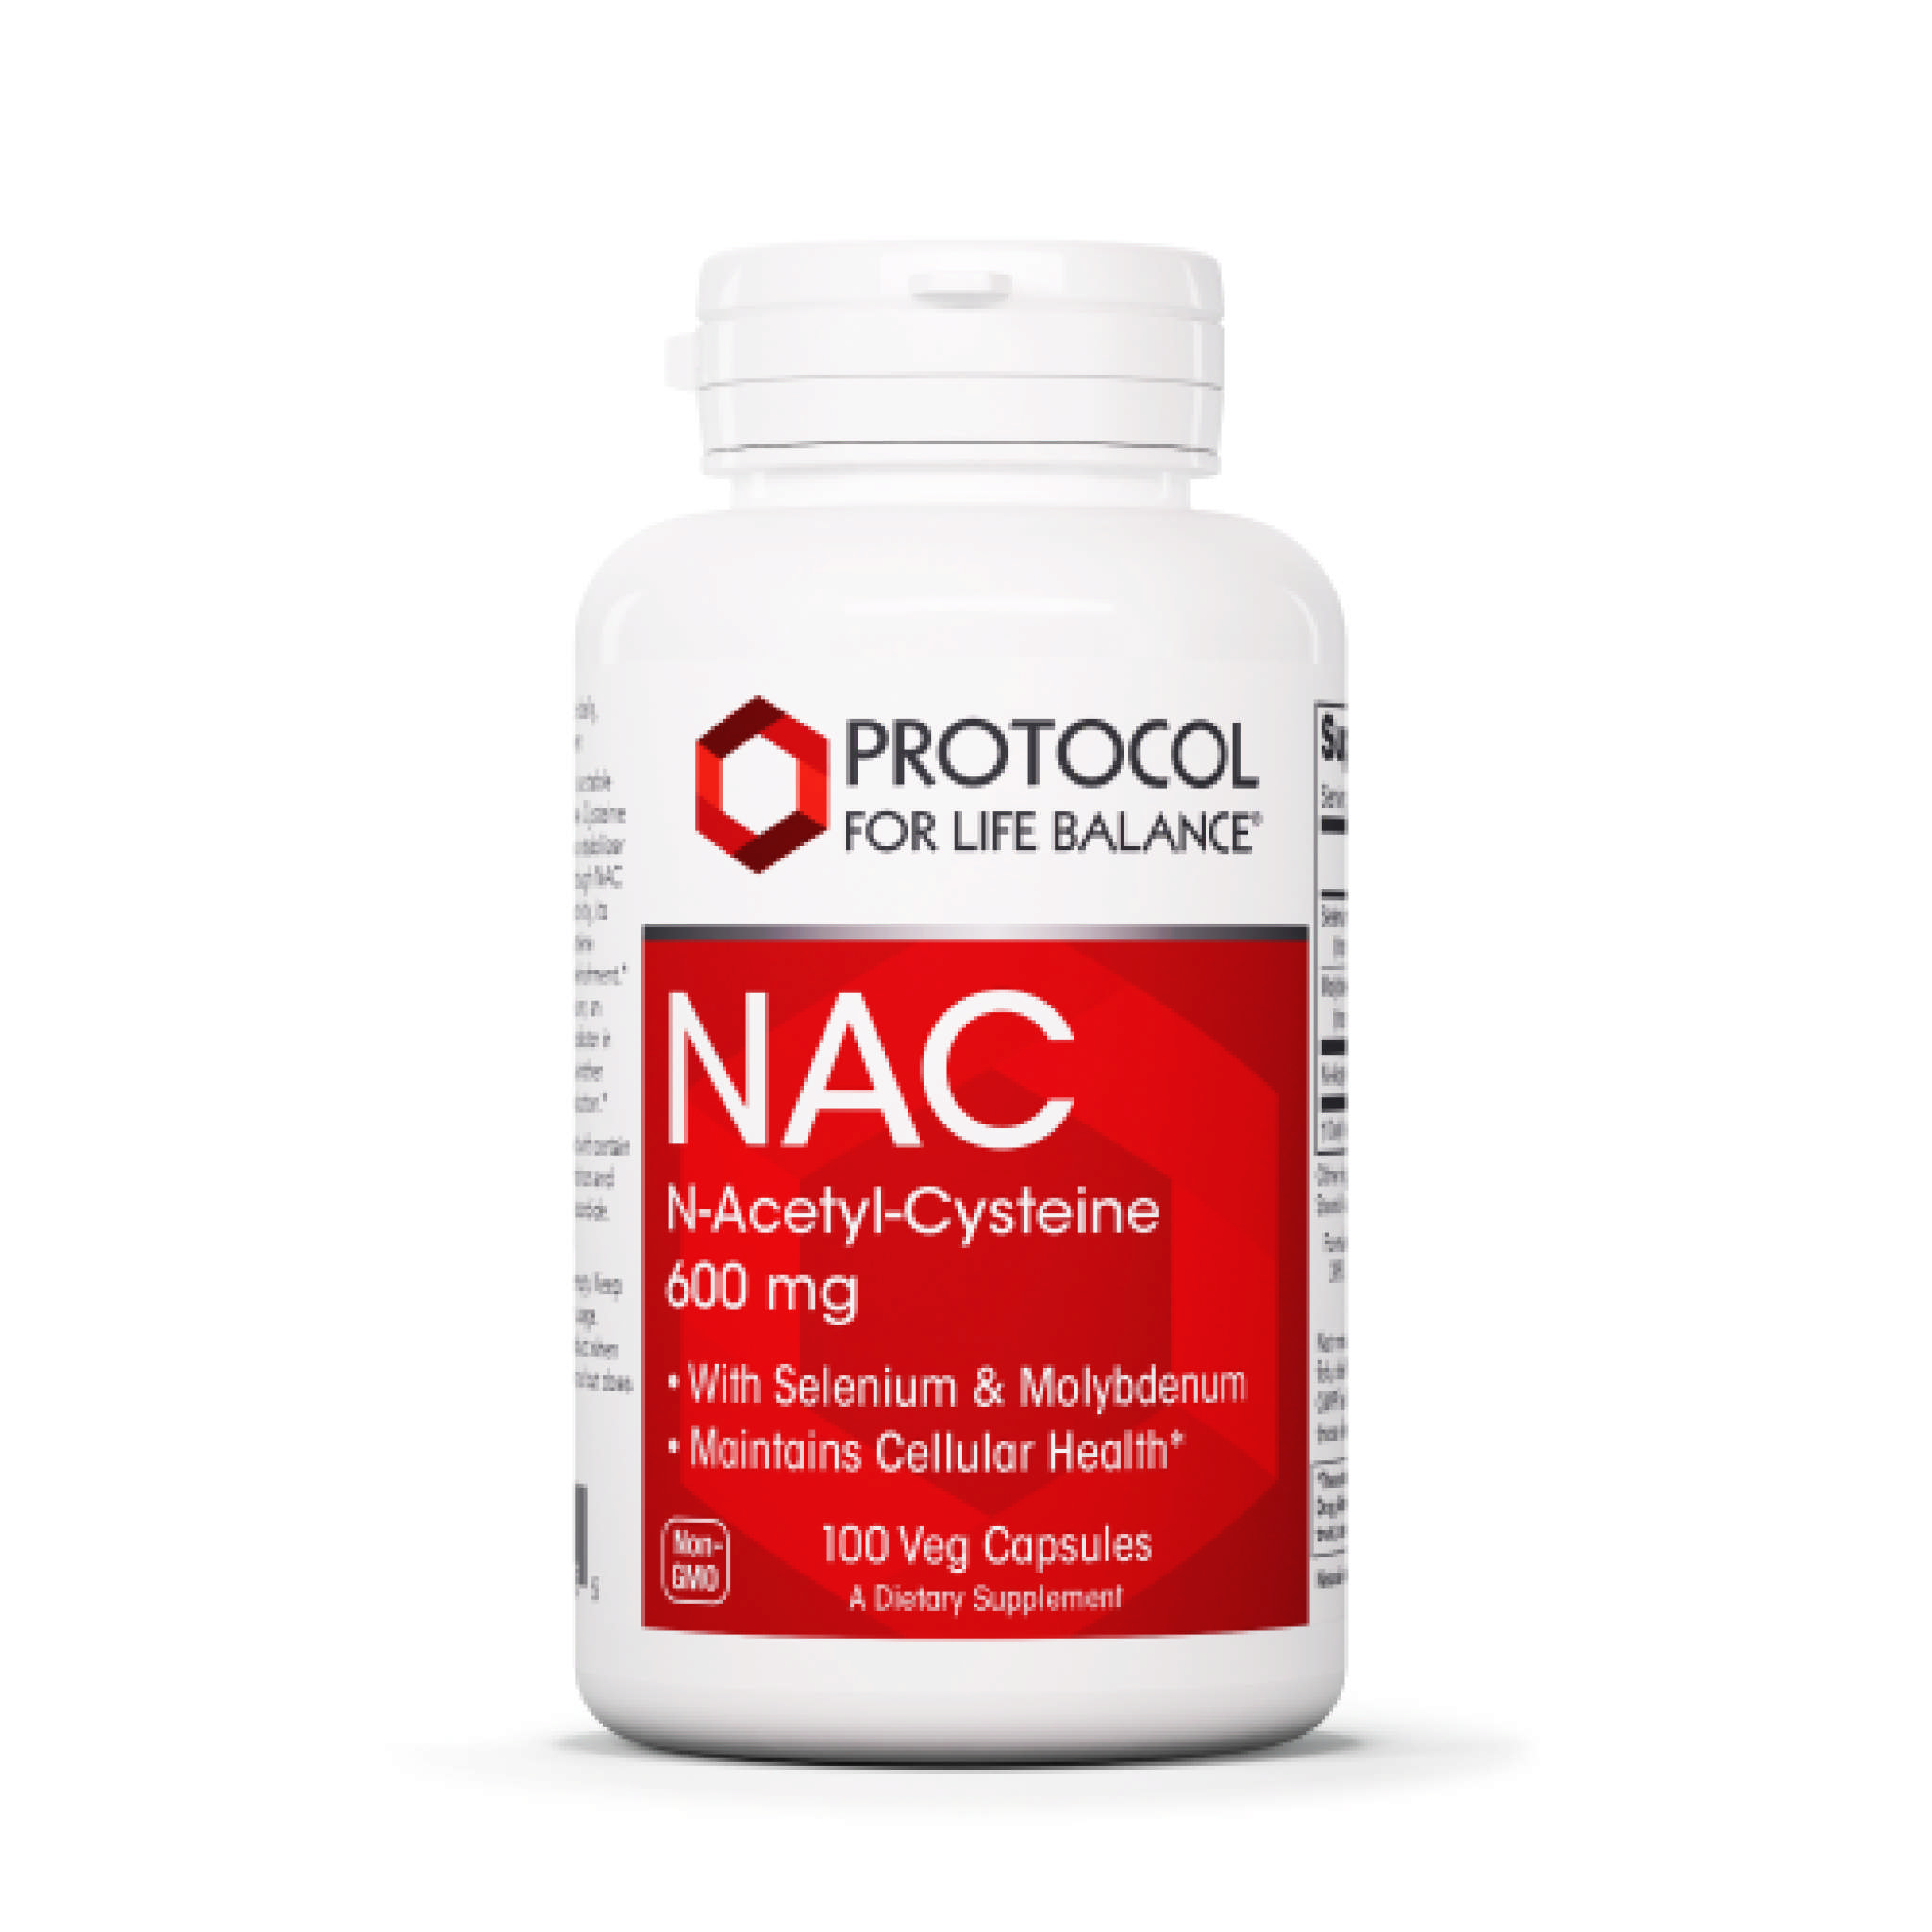 Protocol For Life Balance - Nac 600 mg